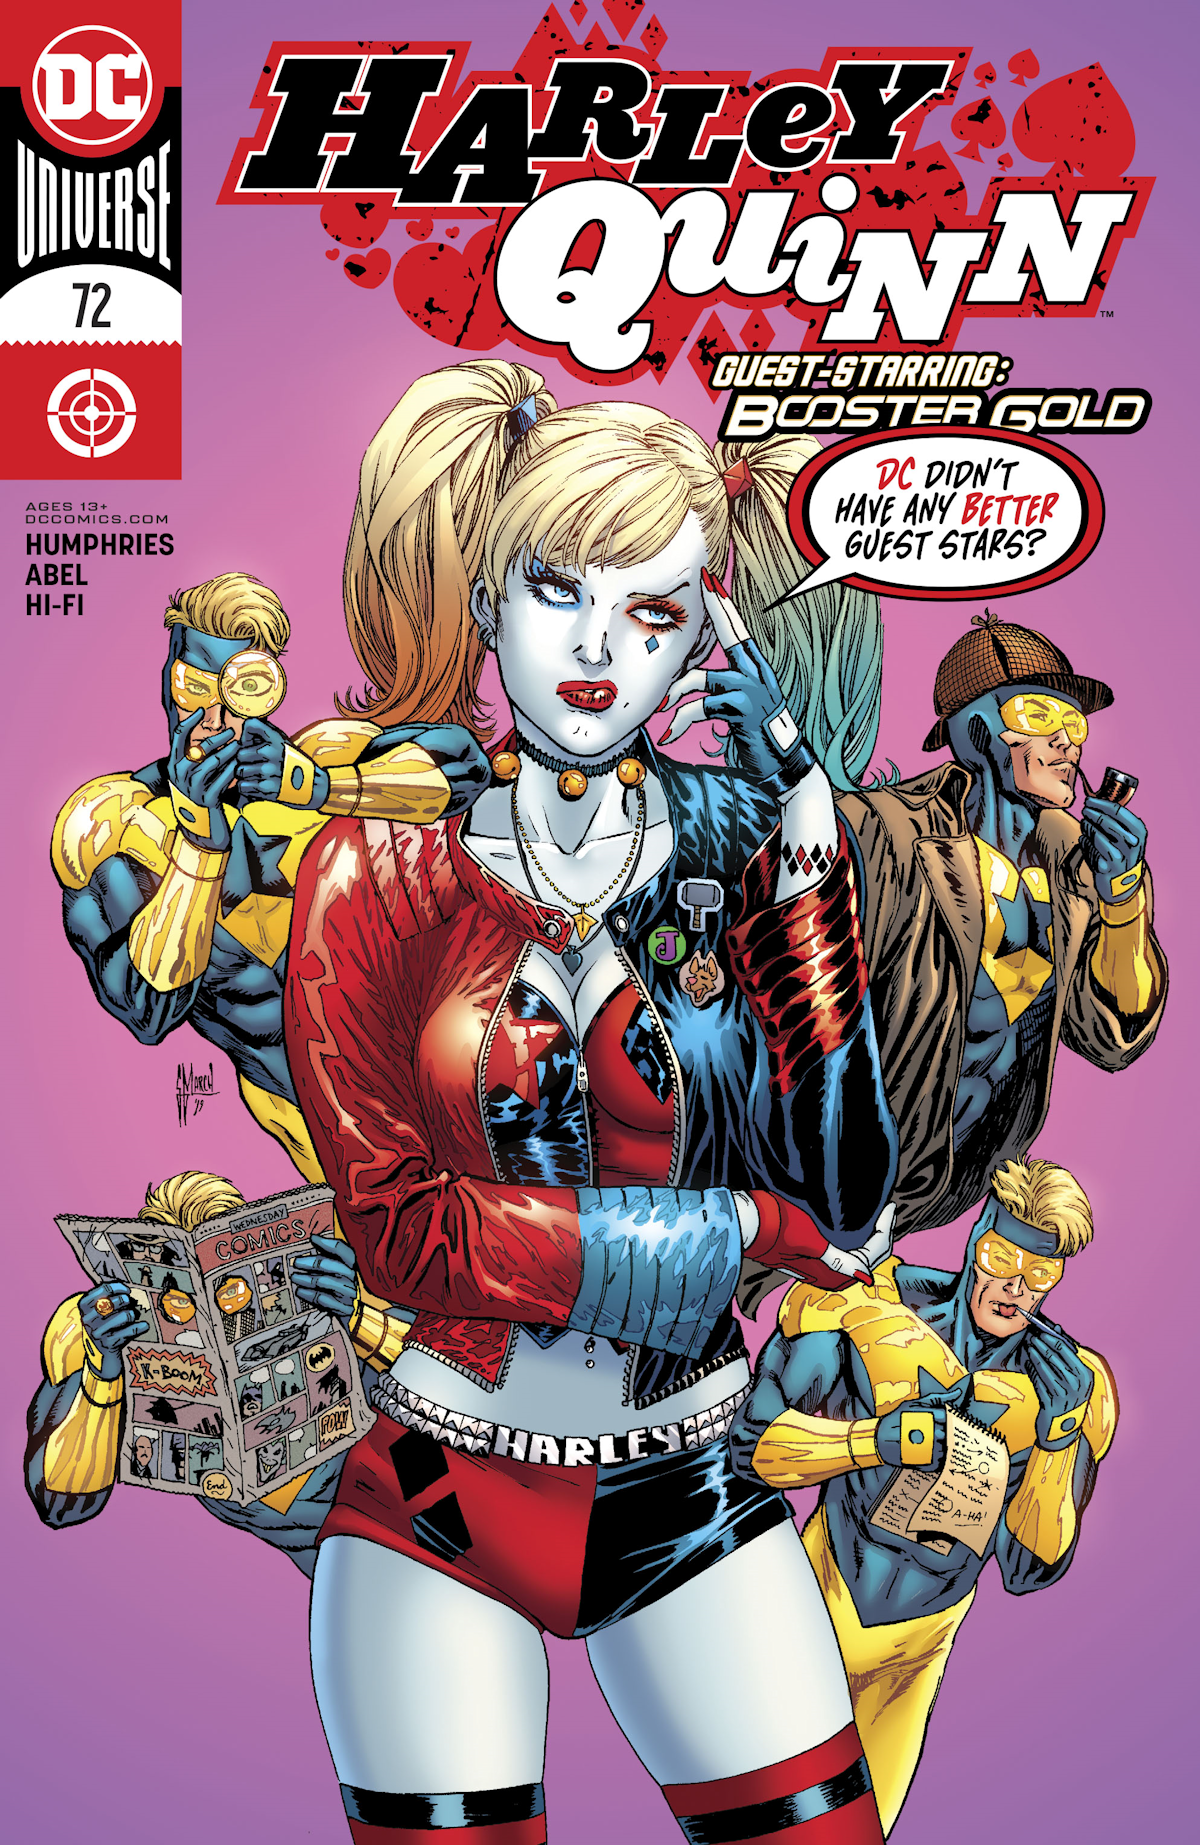 Harley Quinn Vol. 3 72 (Cover A)